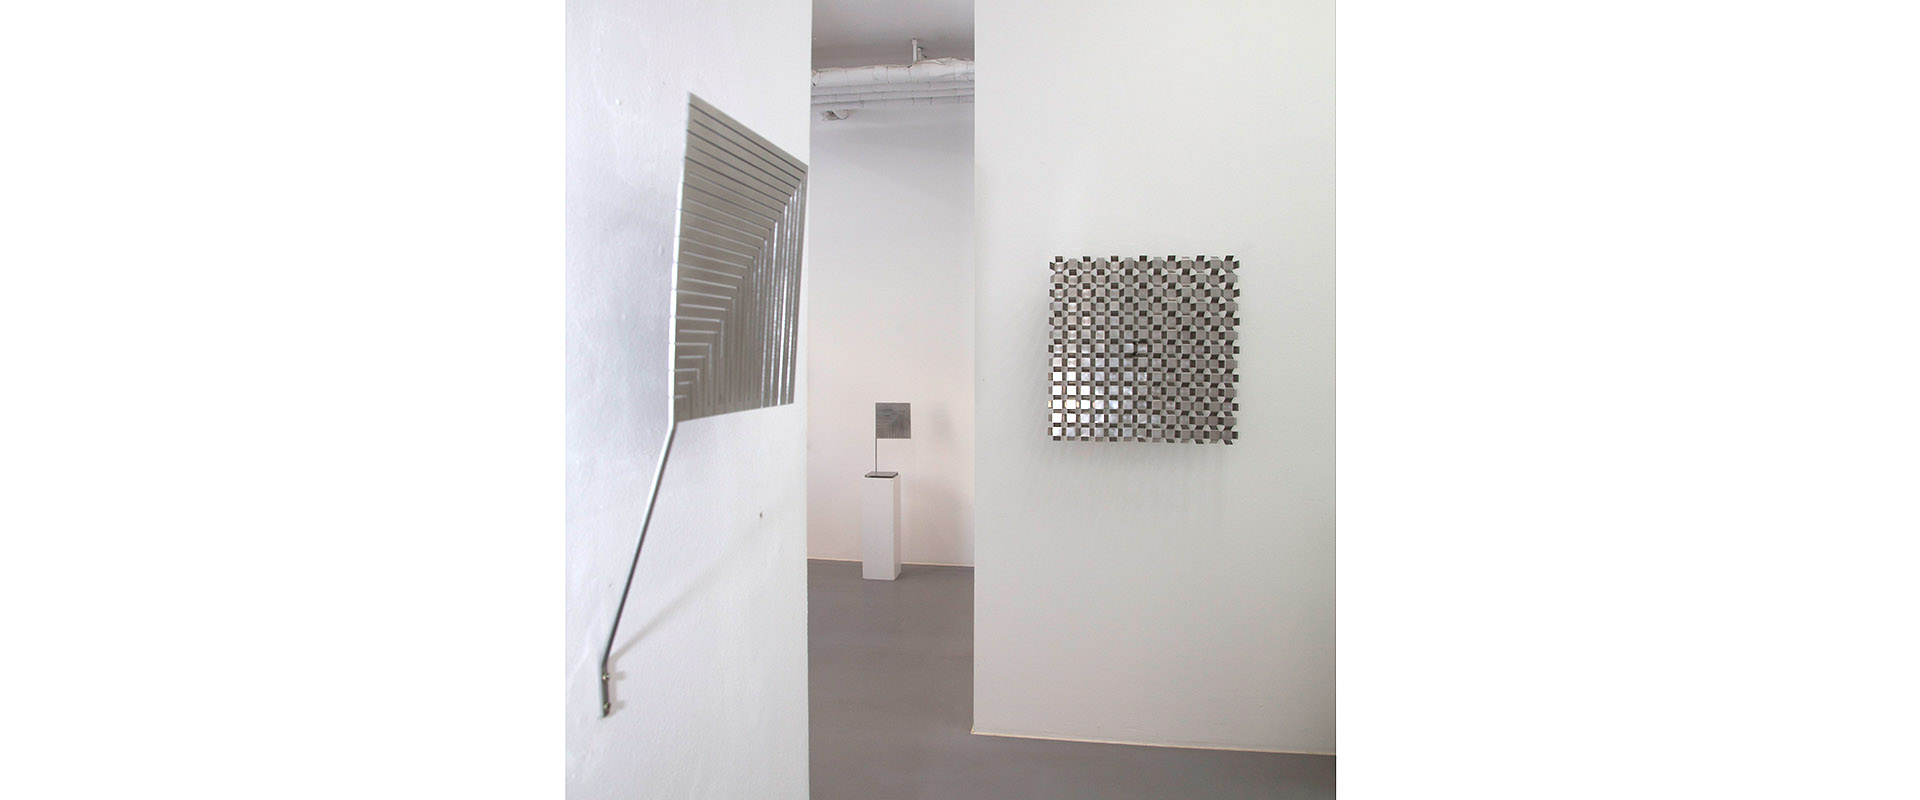 Ausstellungsansicht "Ganzheit als Prinzip. Peter Weber - Martin Willing", Galerie Renate Bender 2016